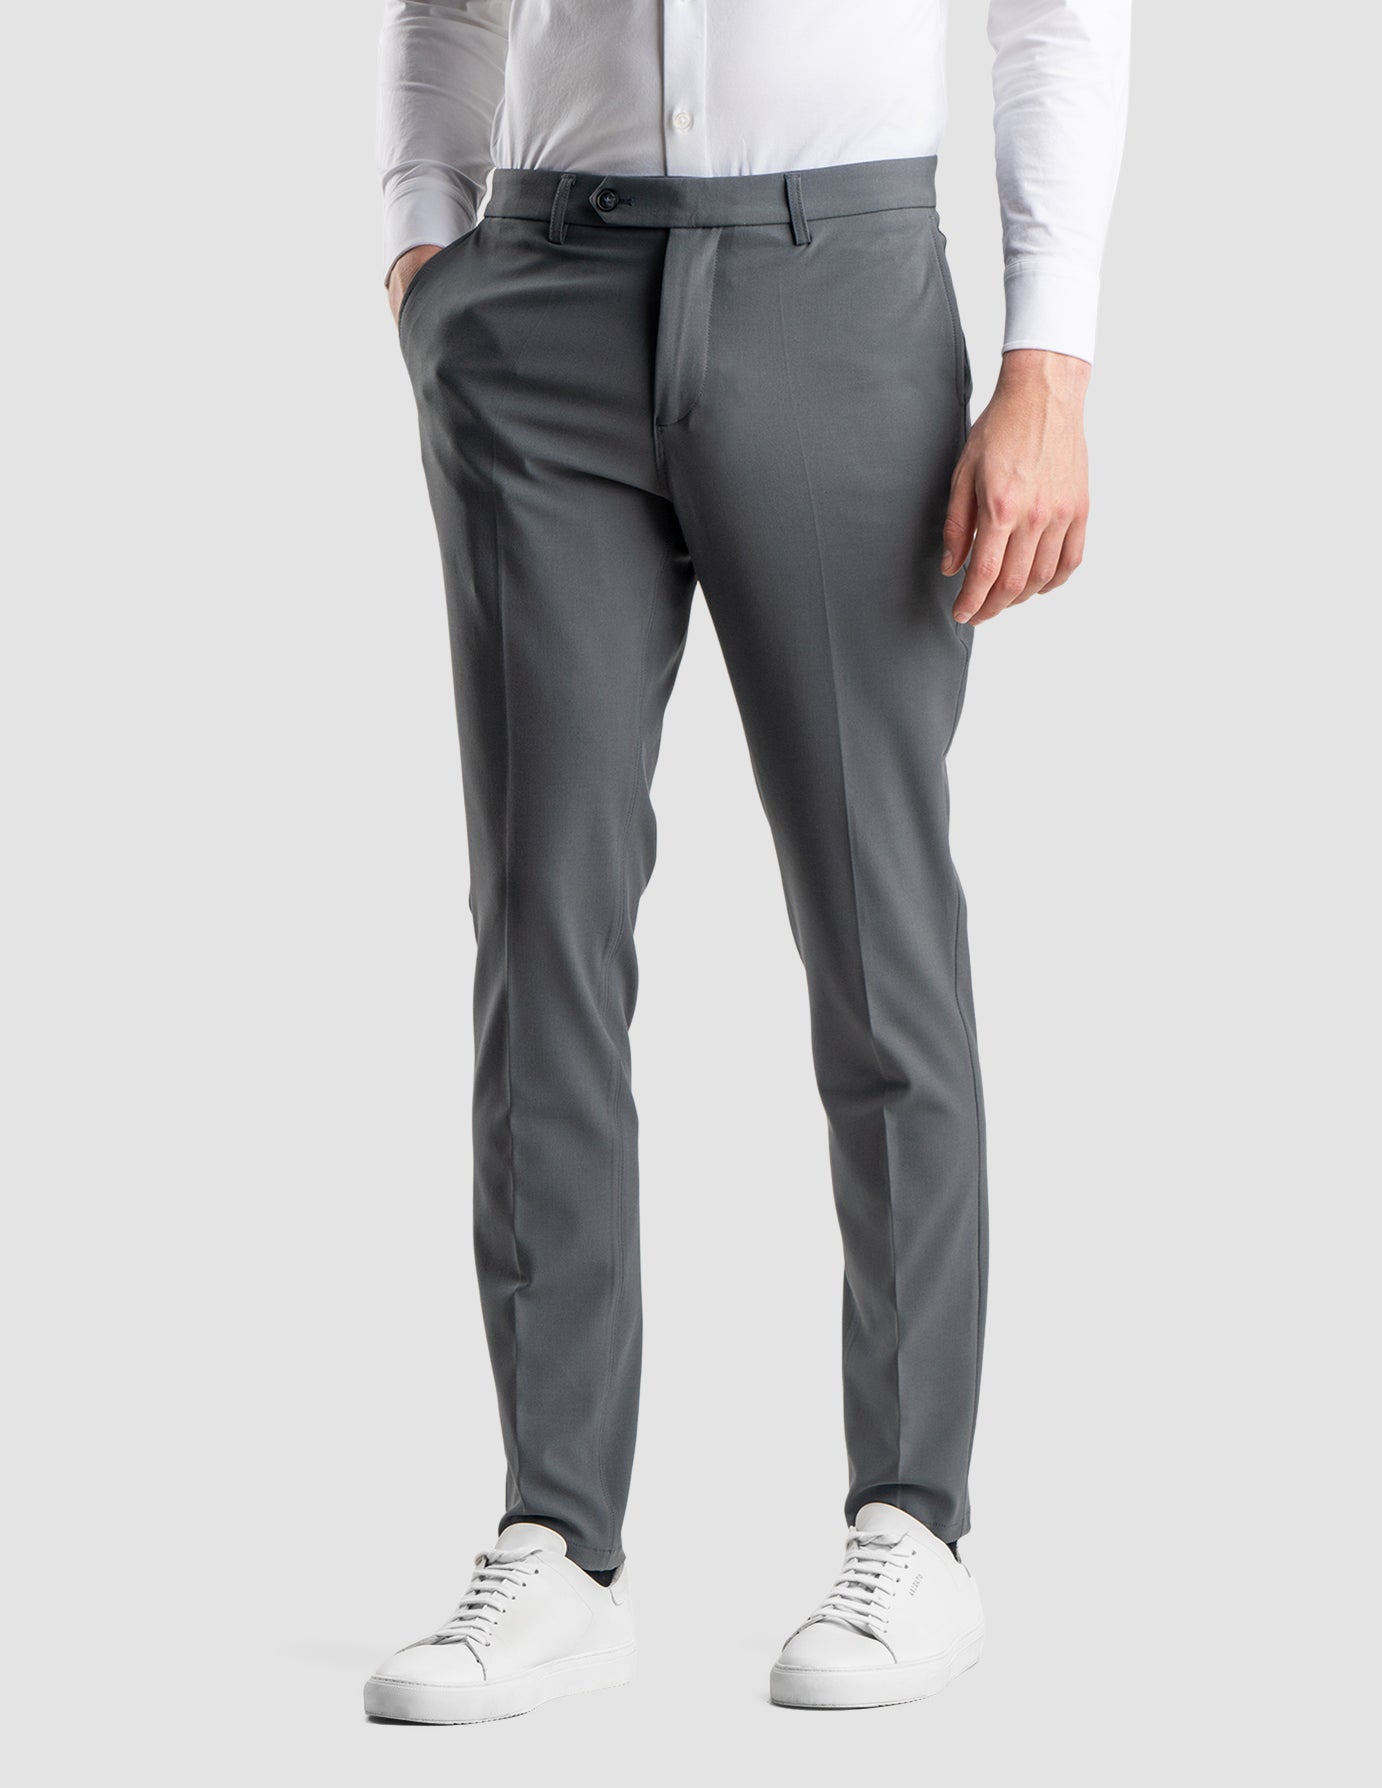 Men's Semi formal Cropped Pants Business Classic Design - Temu